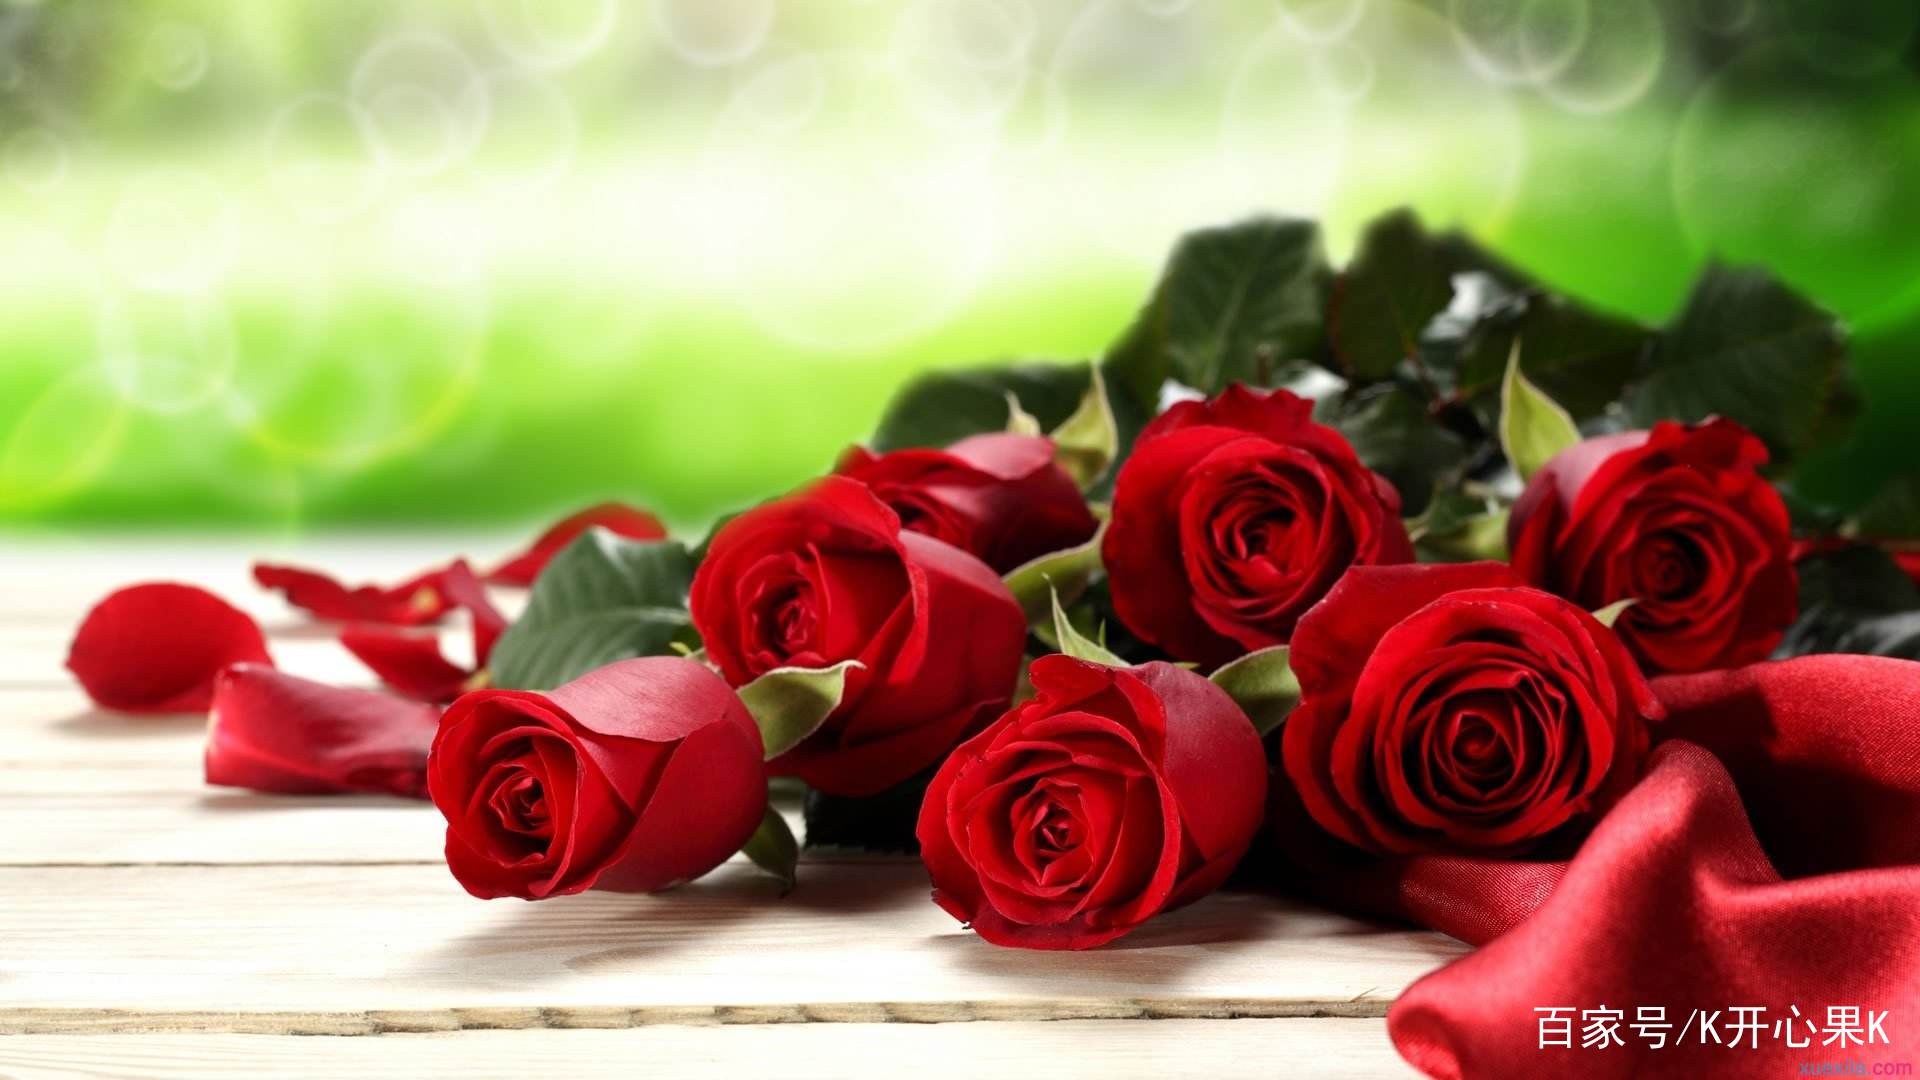 美丽温馨的玫瑰花图集,希望朋友们喜欢!